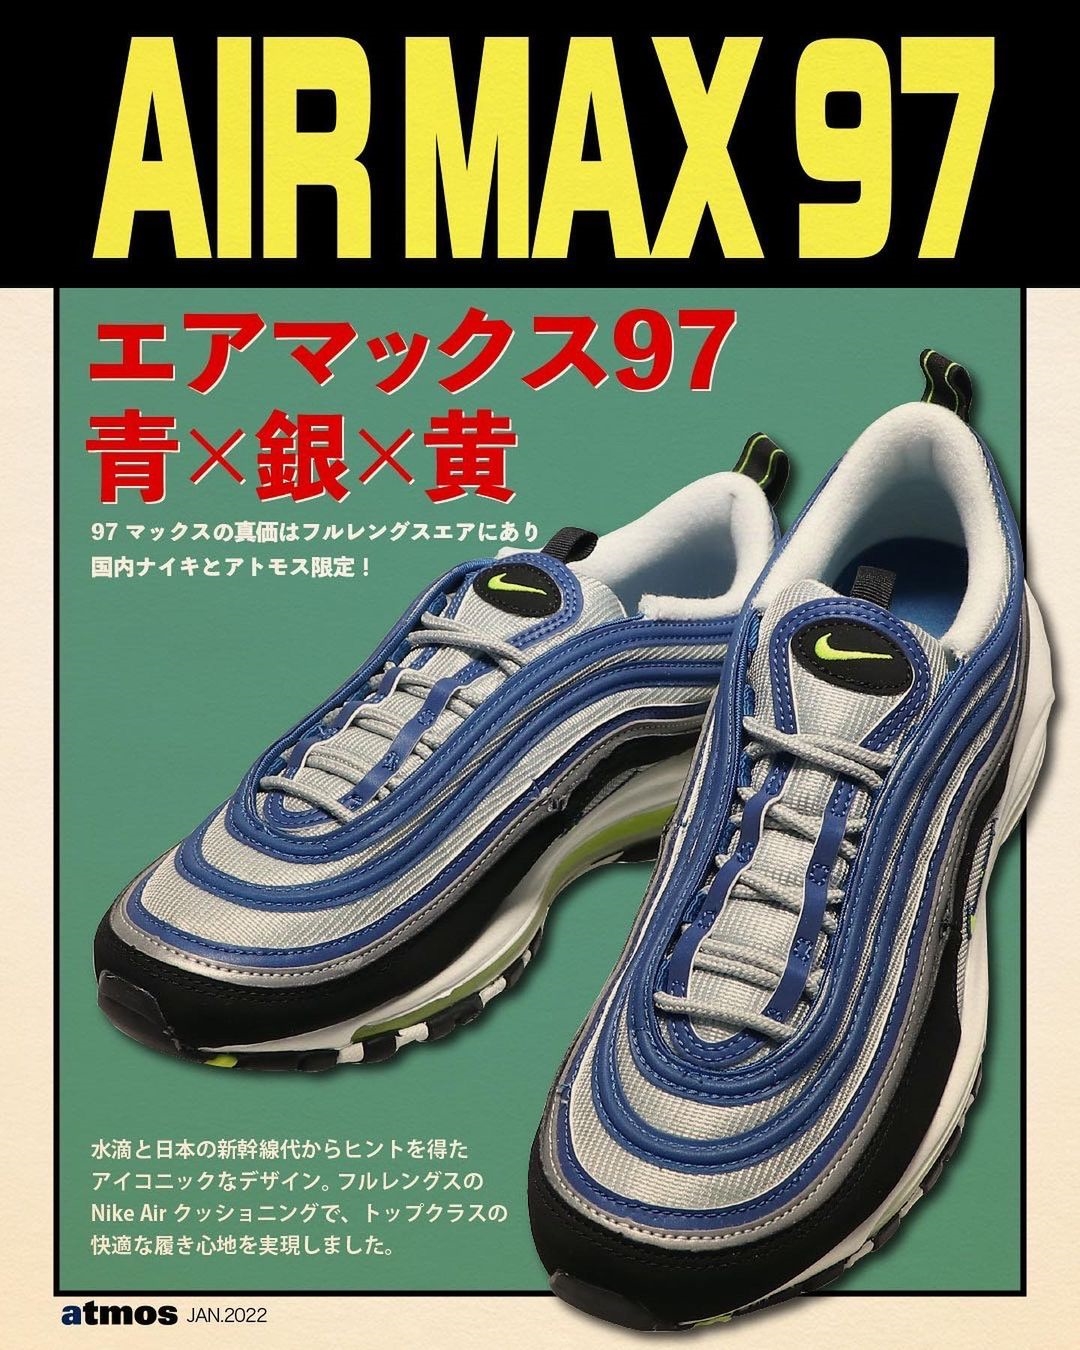 【国内 4/29 発売】ナイキ エア マックス 97 OG “ロイヤルネオン/アトランティックブルー” (NIKE AIR MAX 97 OG “Royal Neon/Atlantic Blue”) [DM0028-400/DQ9131-400]